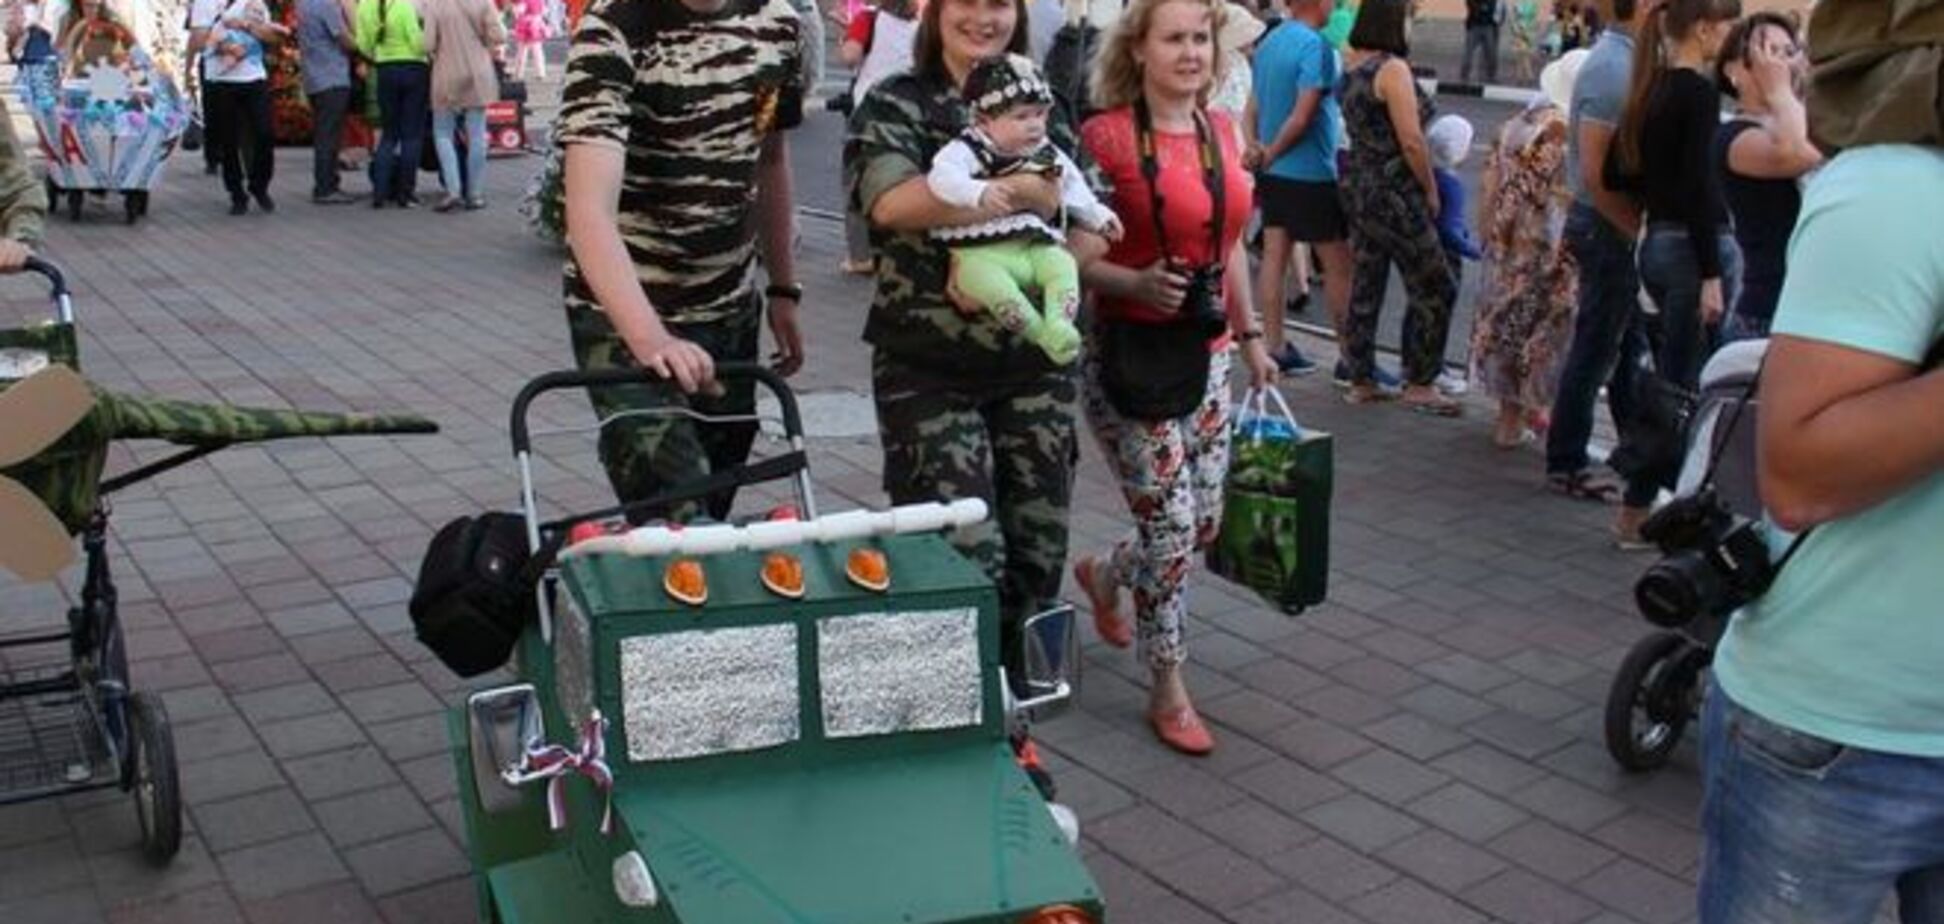 'Армата' курит в сторонке'! В России детей возили в военных колясках: фотофакт